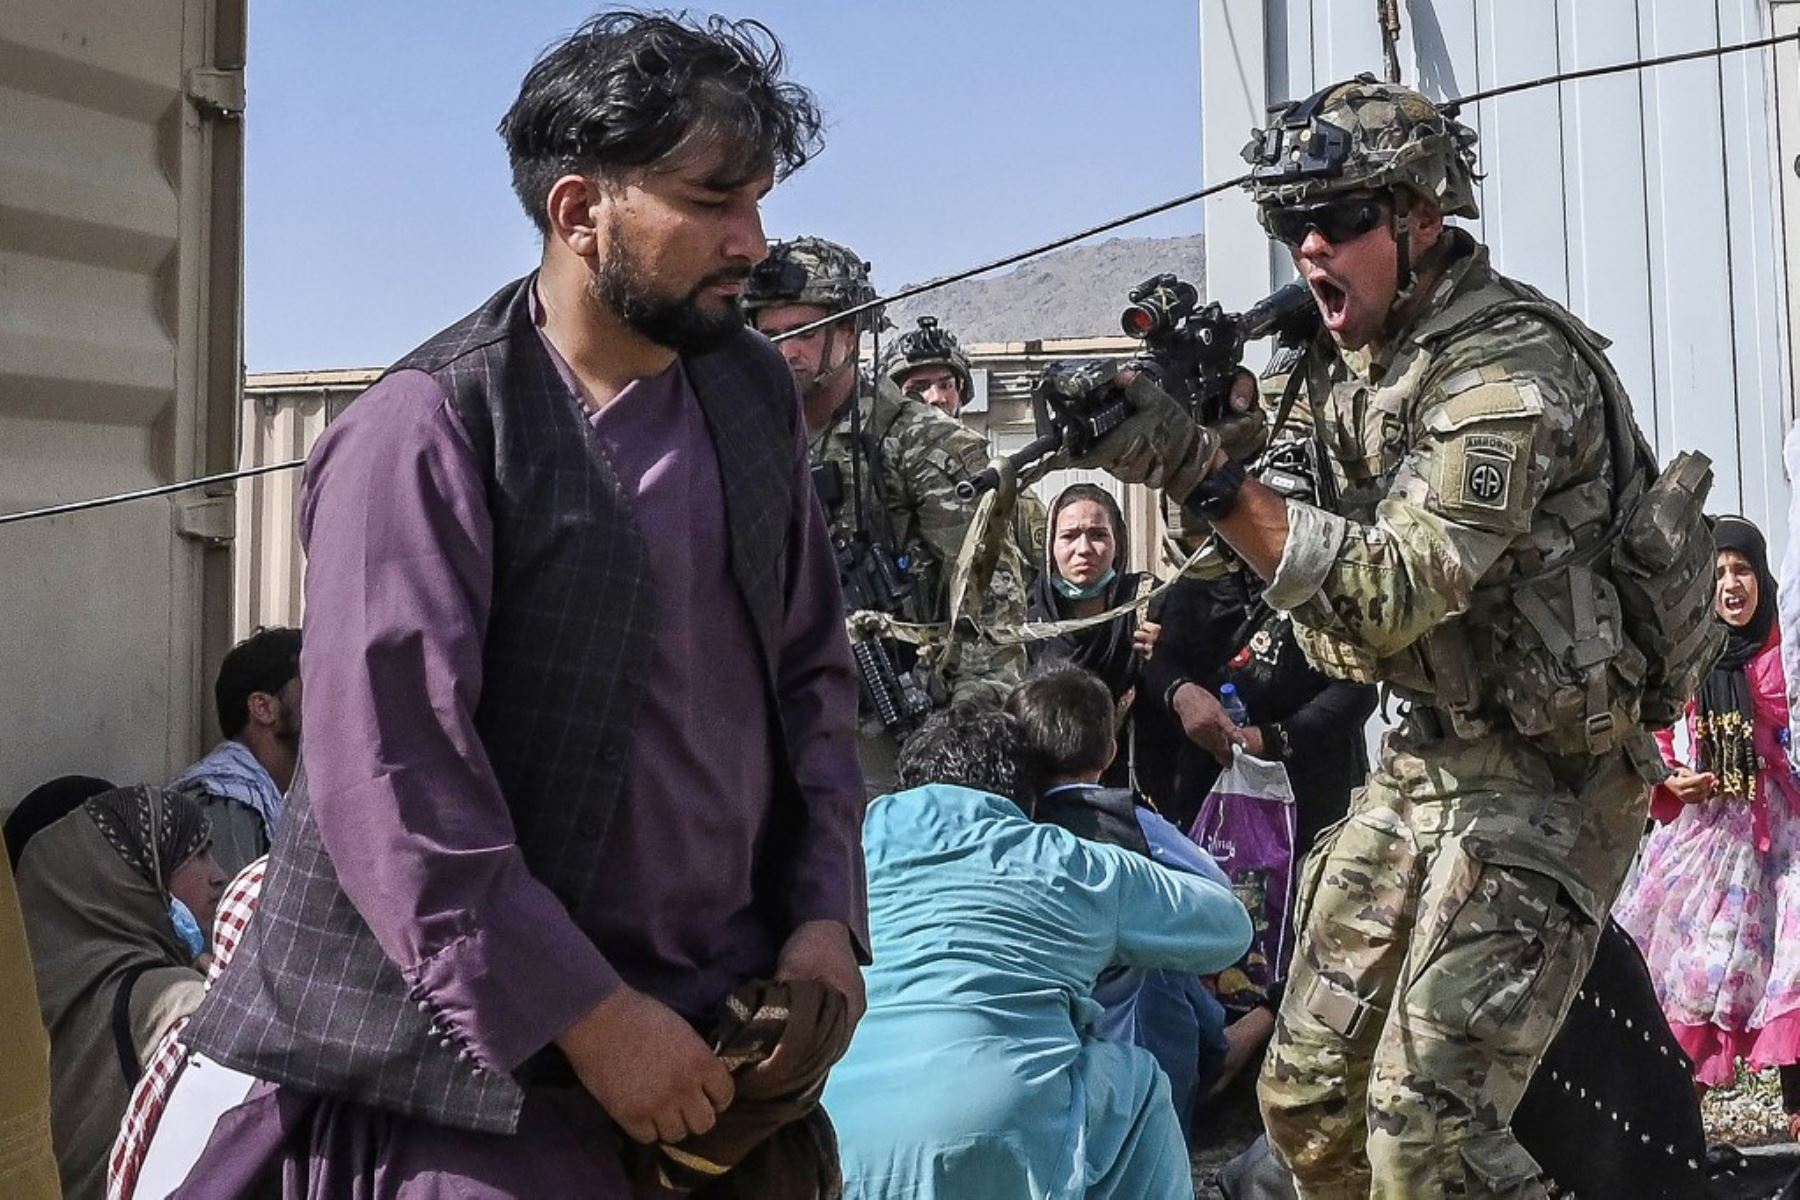 Afganos se amontonan en aeropuerto de Kabul después del final de la guerra de 20 años de Afganistán, mientras miles de personas asaltaron el aeropuerto de la ciudad tratando de huir de la temida marca de línea dura del grupo.

Foto: AFP